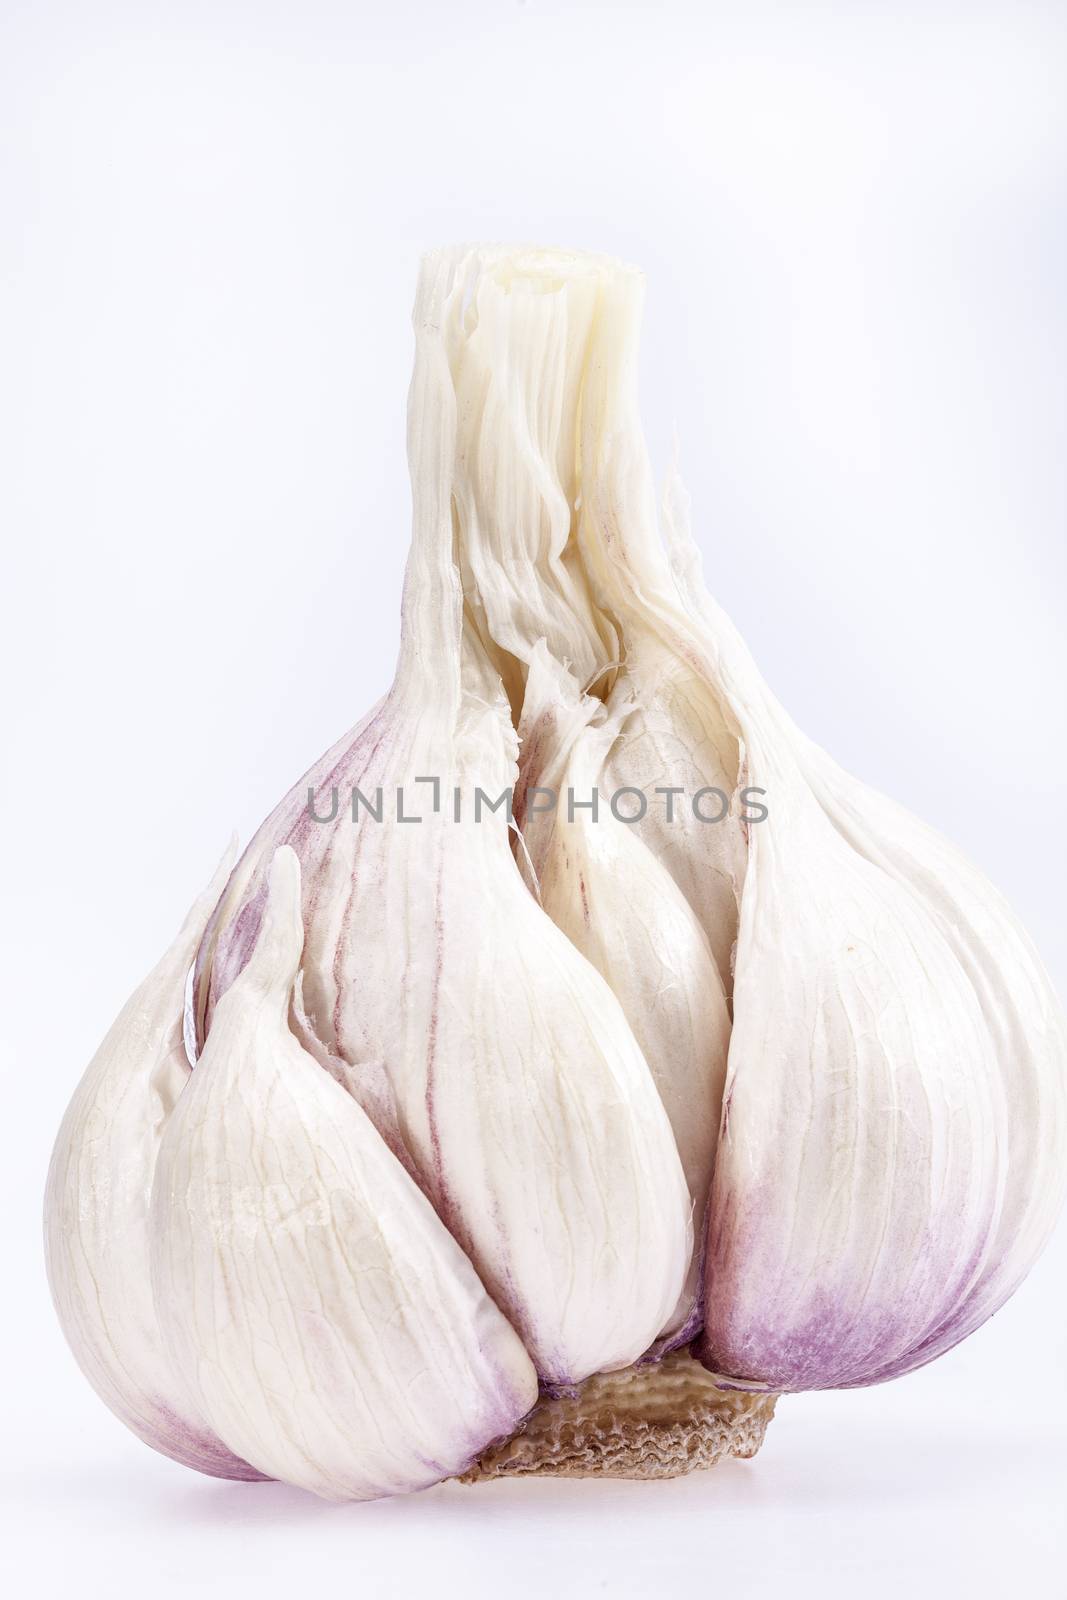 single garlic isolated on white background, close up